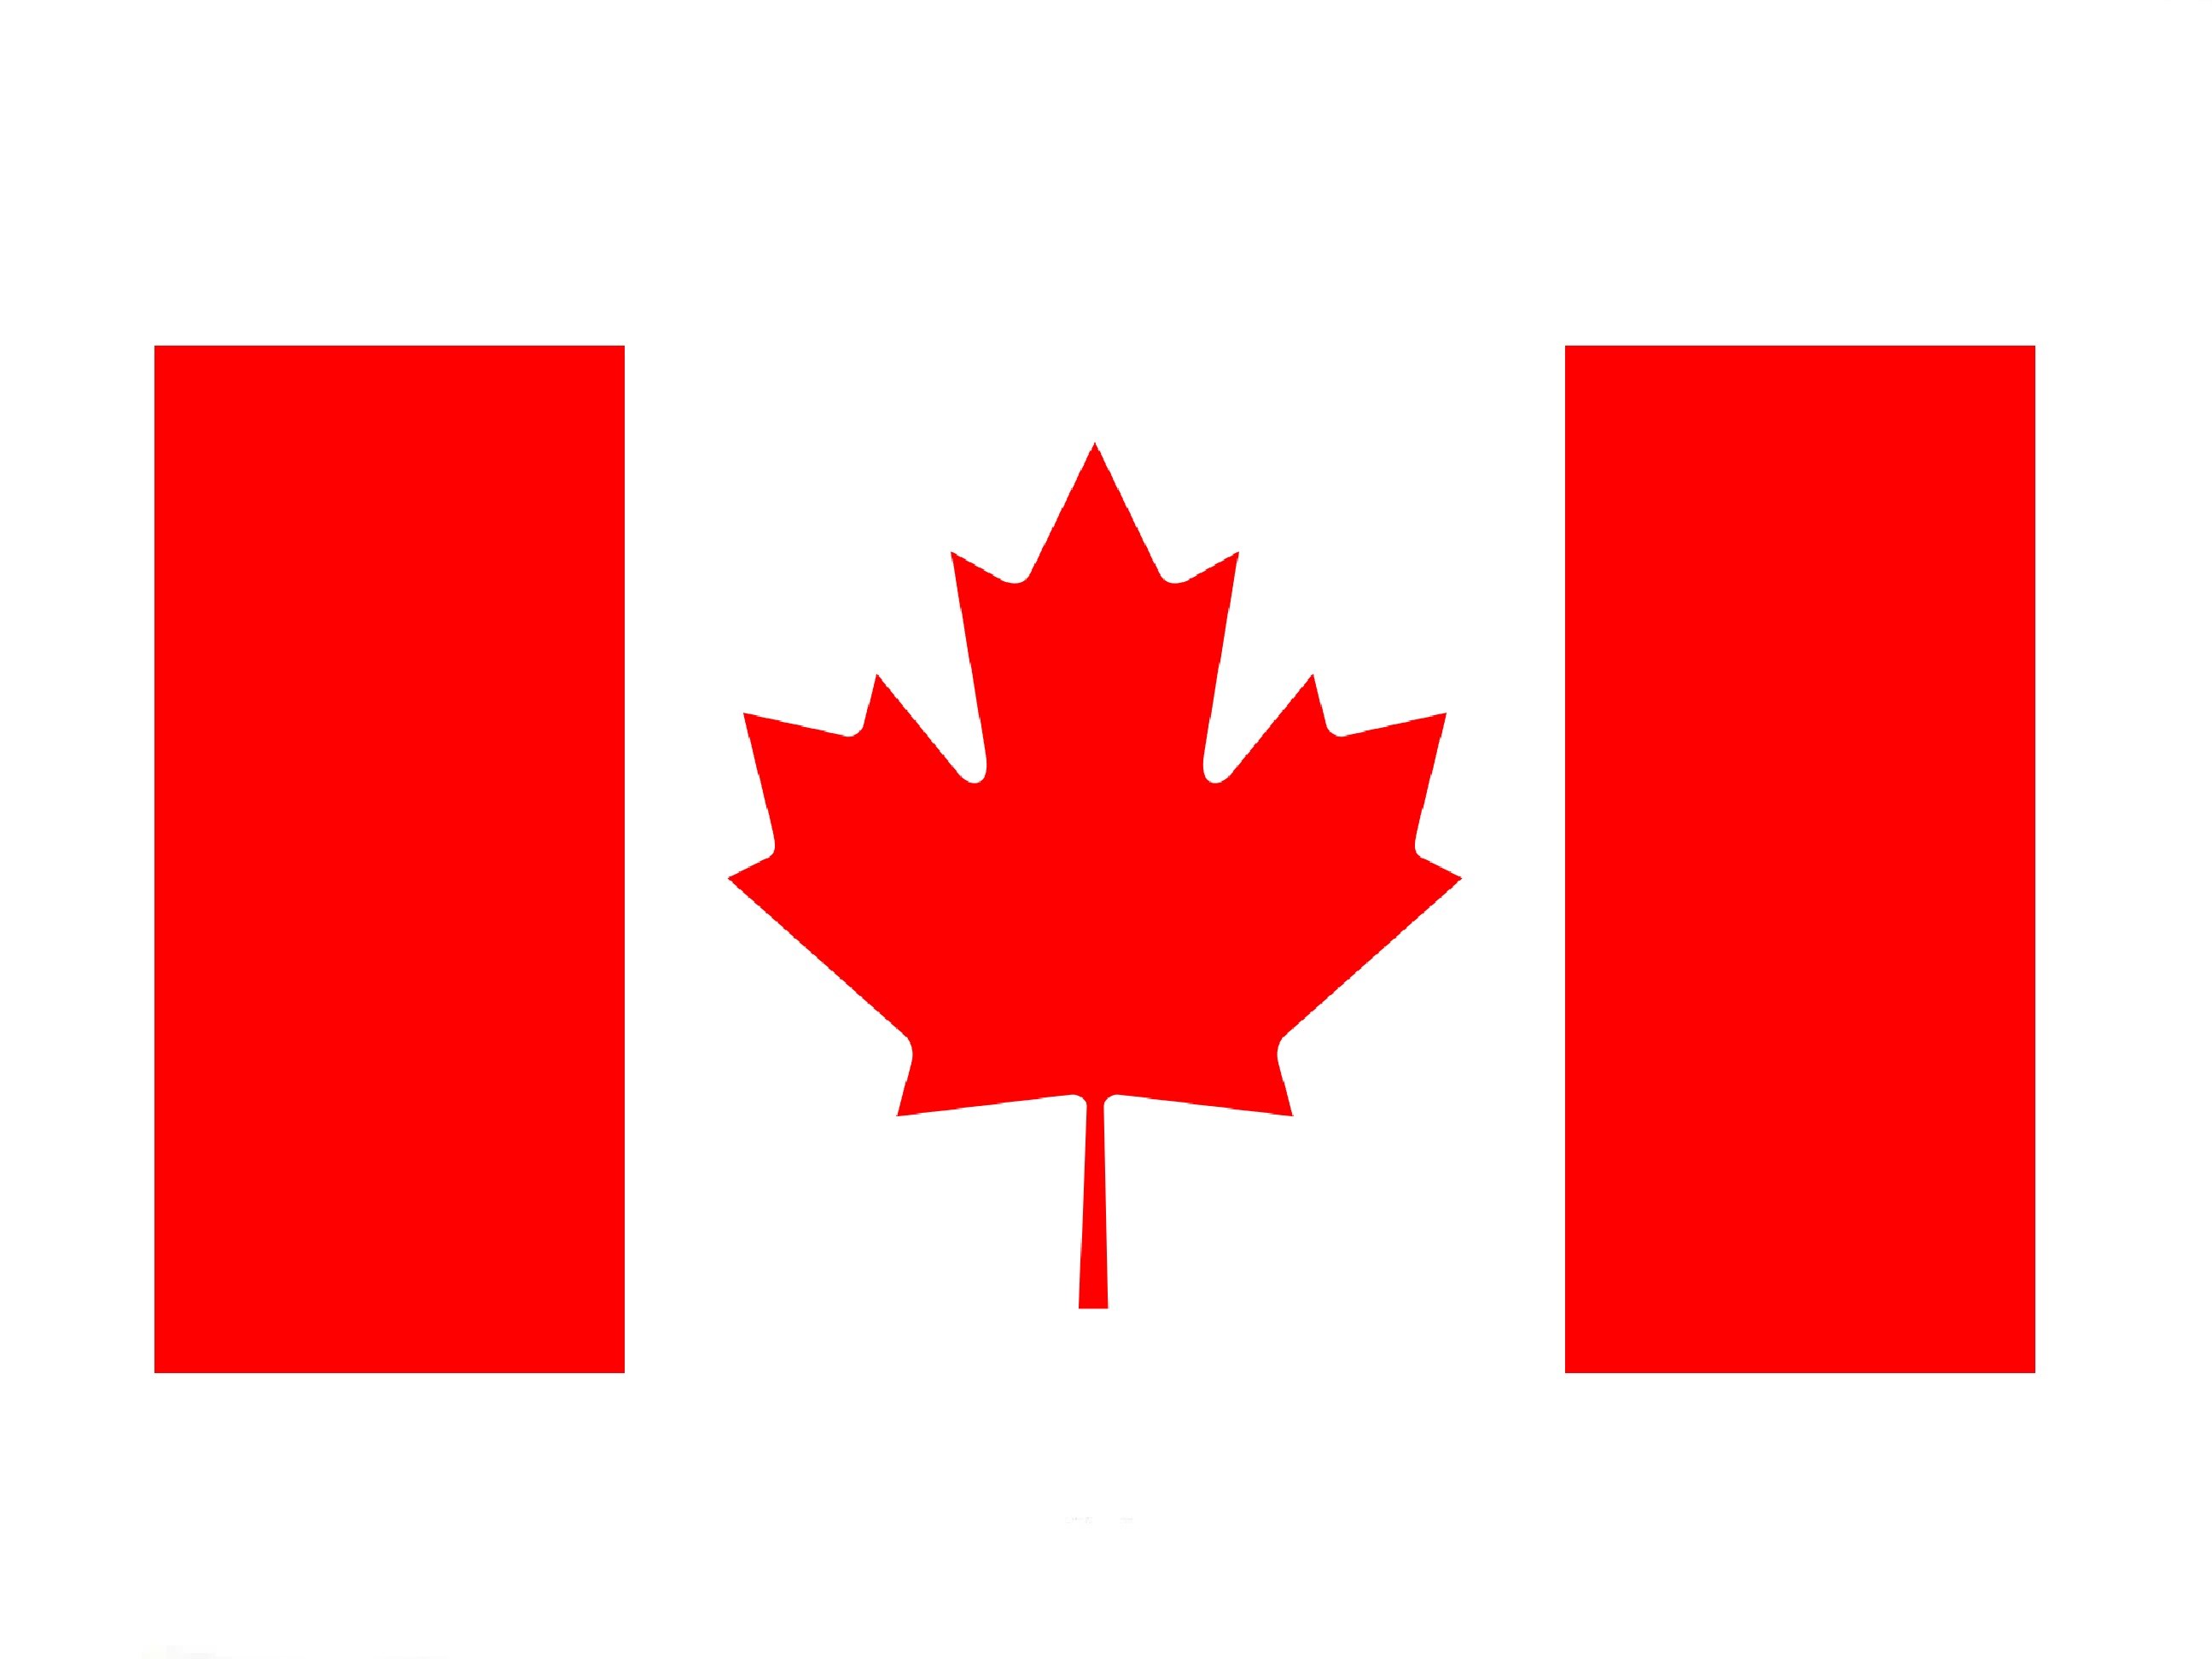 How to Draw a Canadian Flag / Ð?Ð°Ðº Ð½Ð°Ñ?Ð¸ÑÐ¾Ð²Ð°Ñ?Ñ? Ñ?Ð»Ð°Ð³ Ð?Ð°Ð½Ð°Ð´Ñ? - YouTube